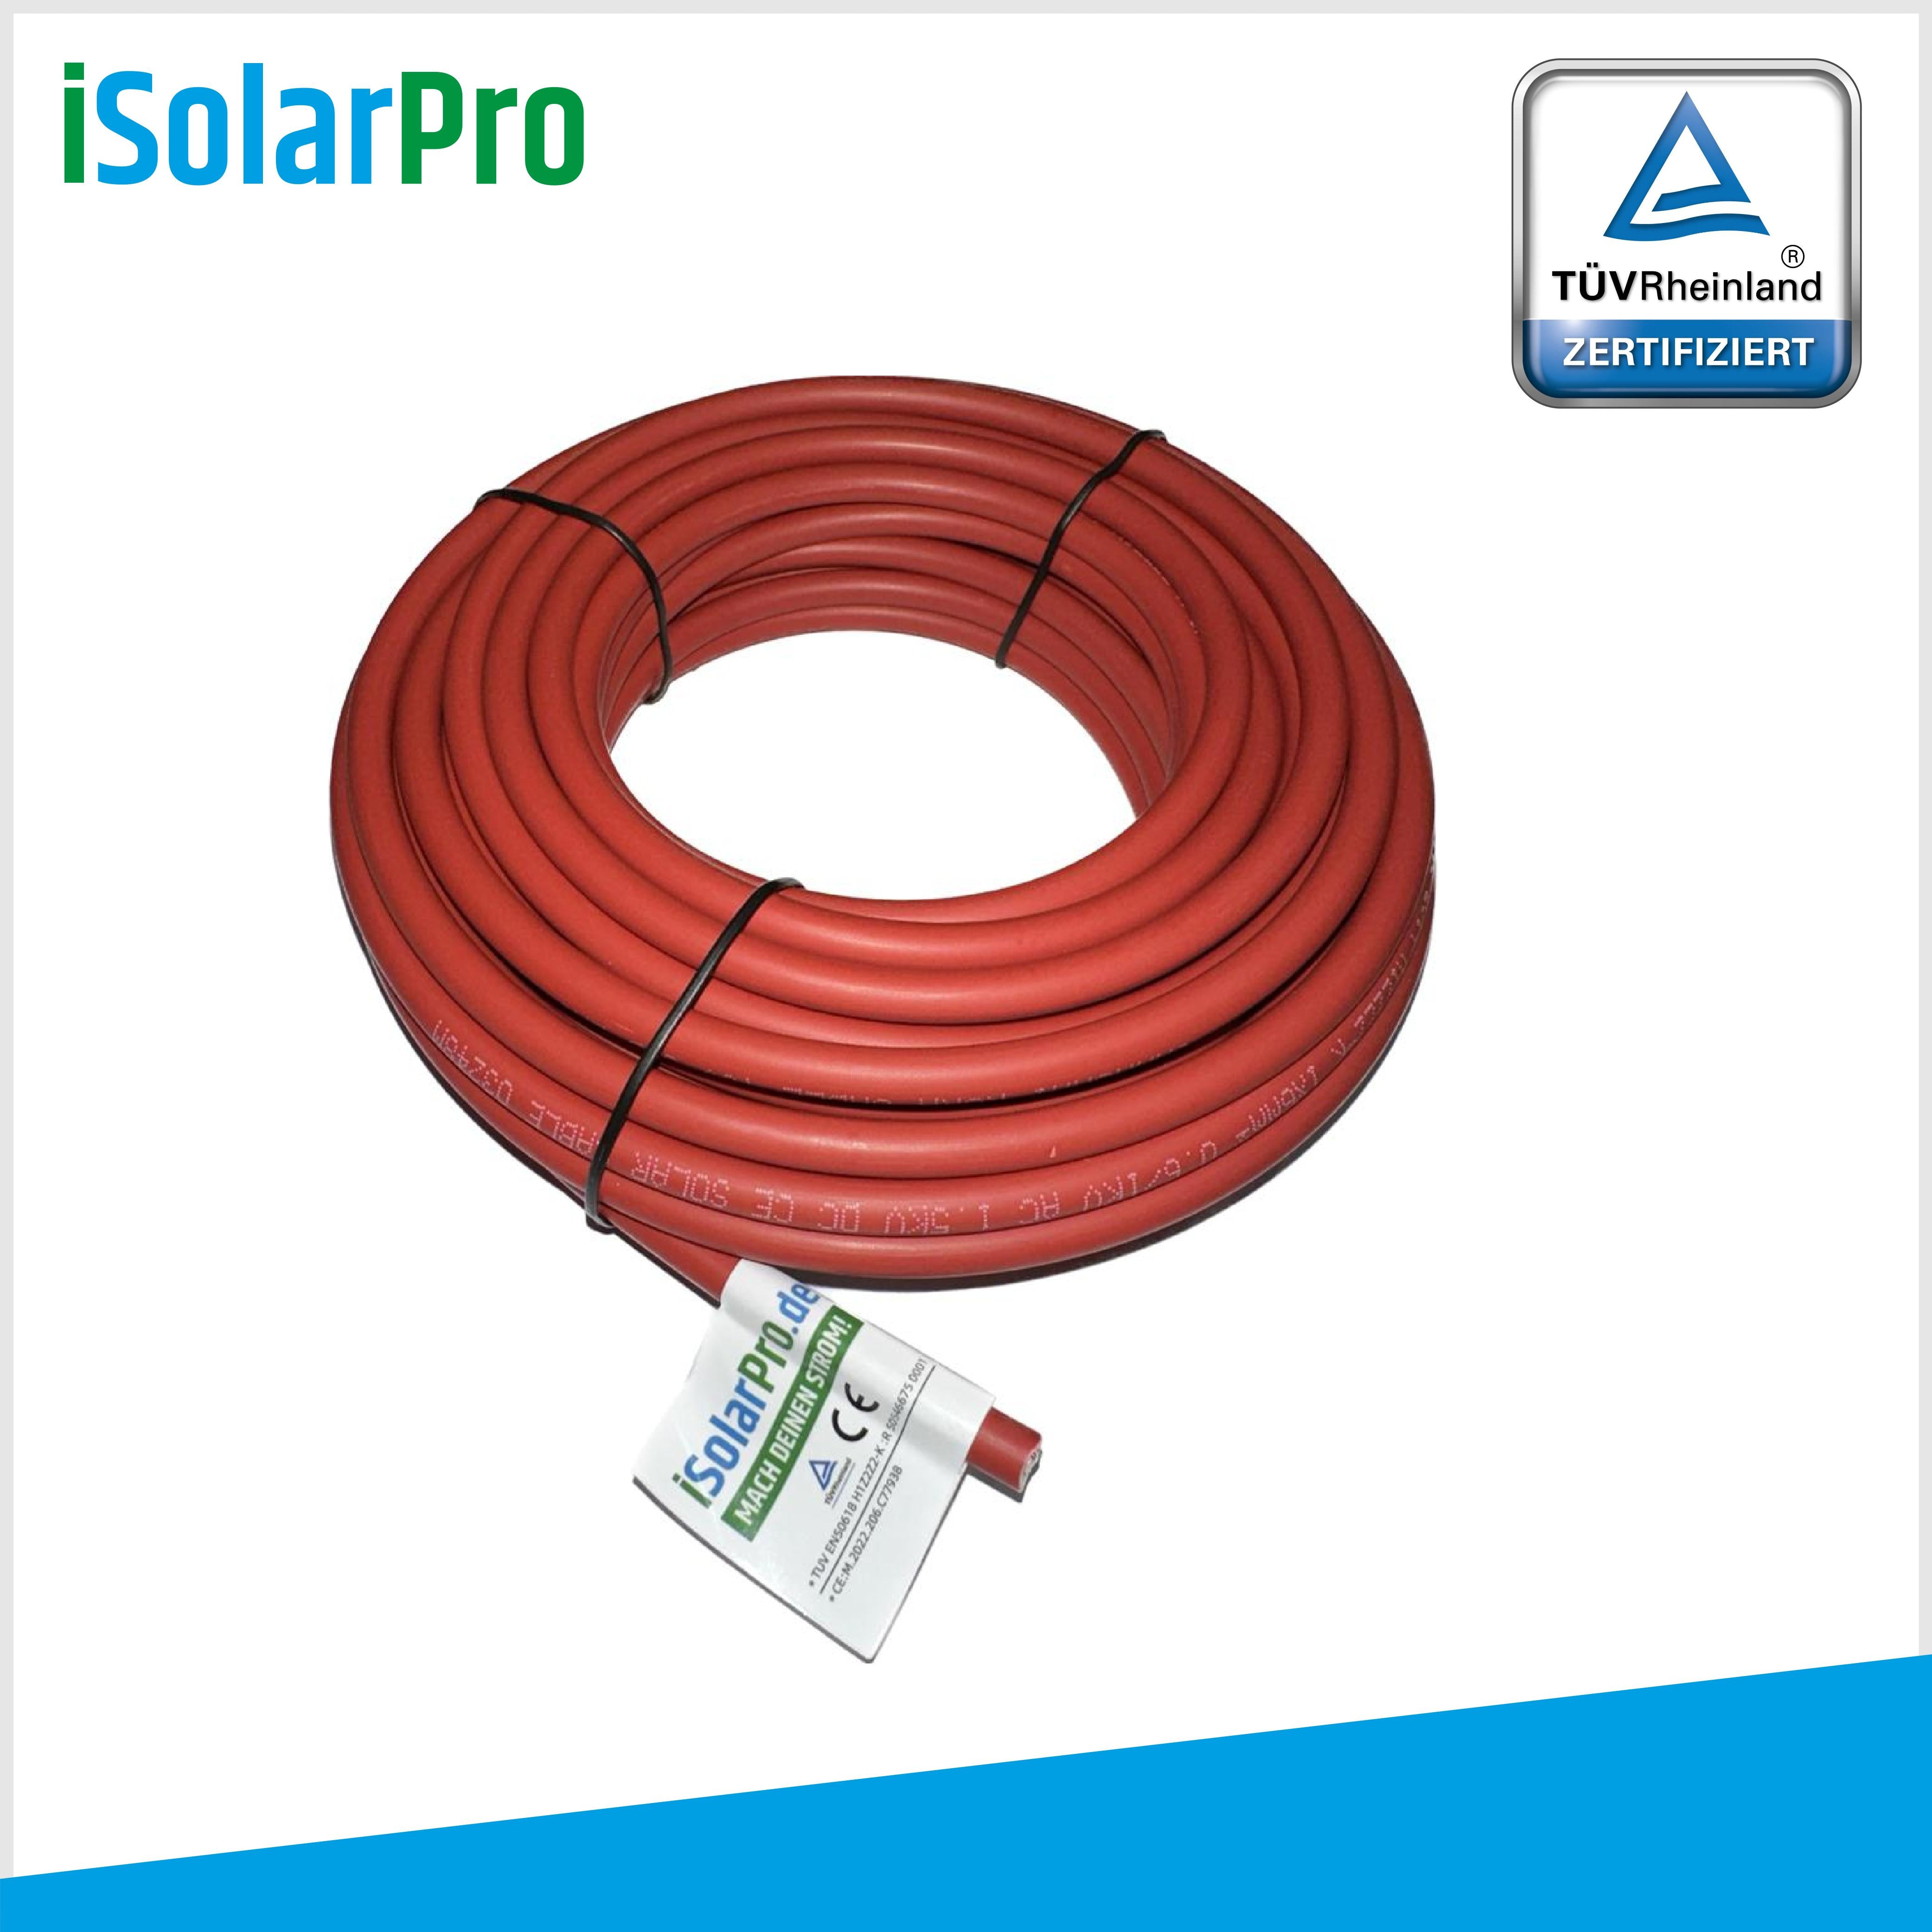 10m Solarkabel 6 mm² Photovoltaik Kabel für PV Anlagen rot